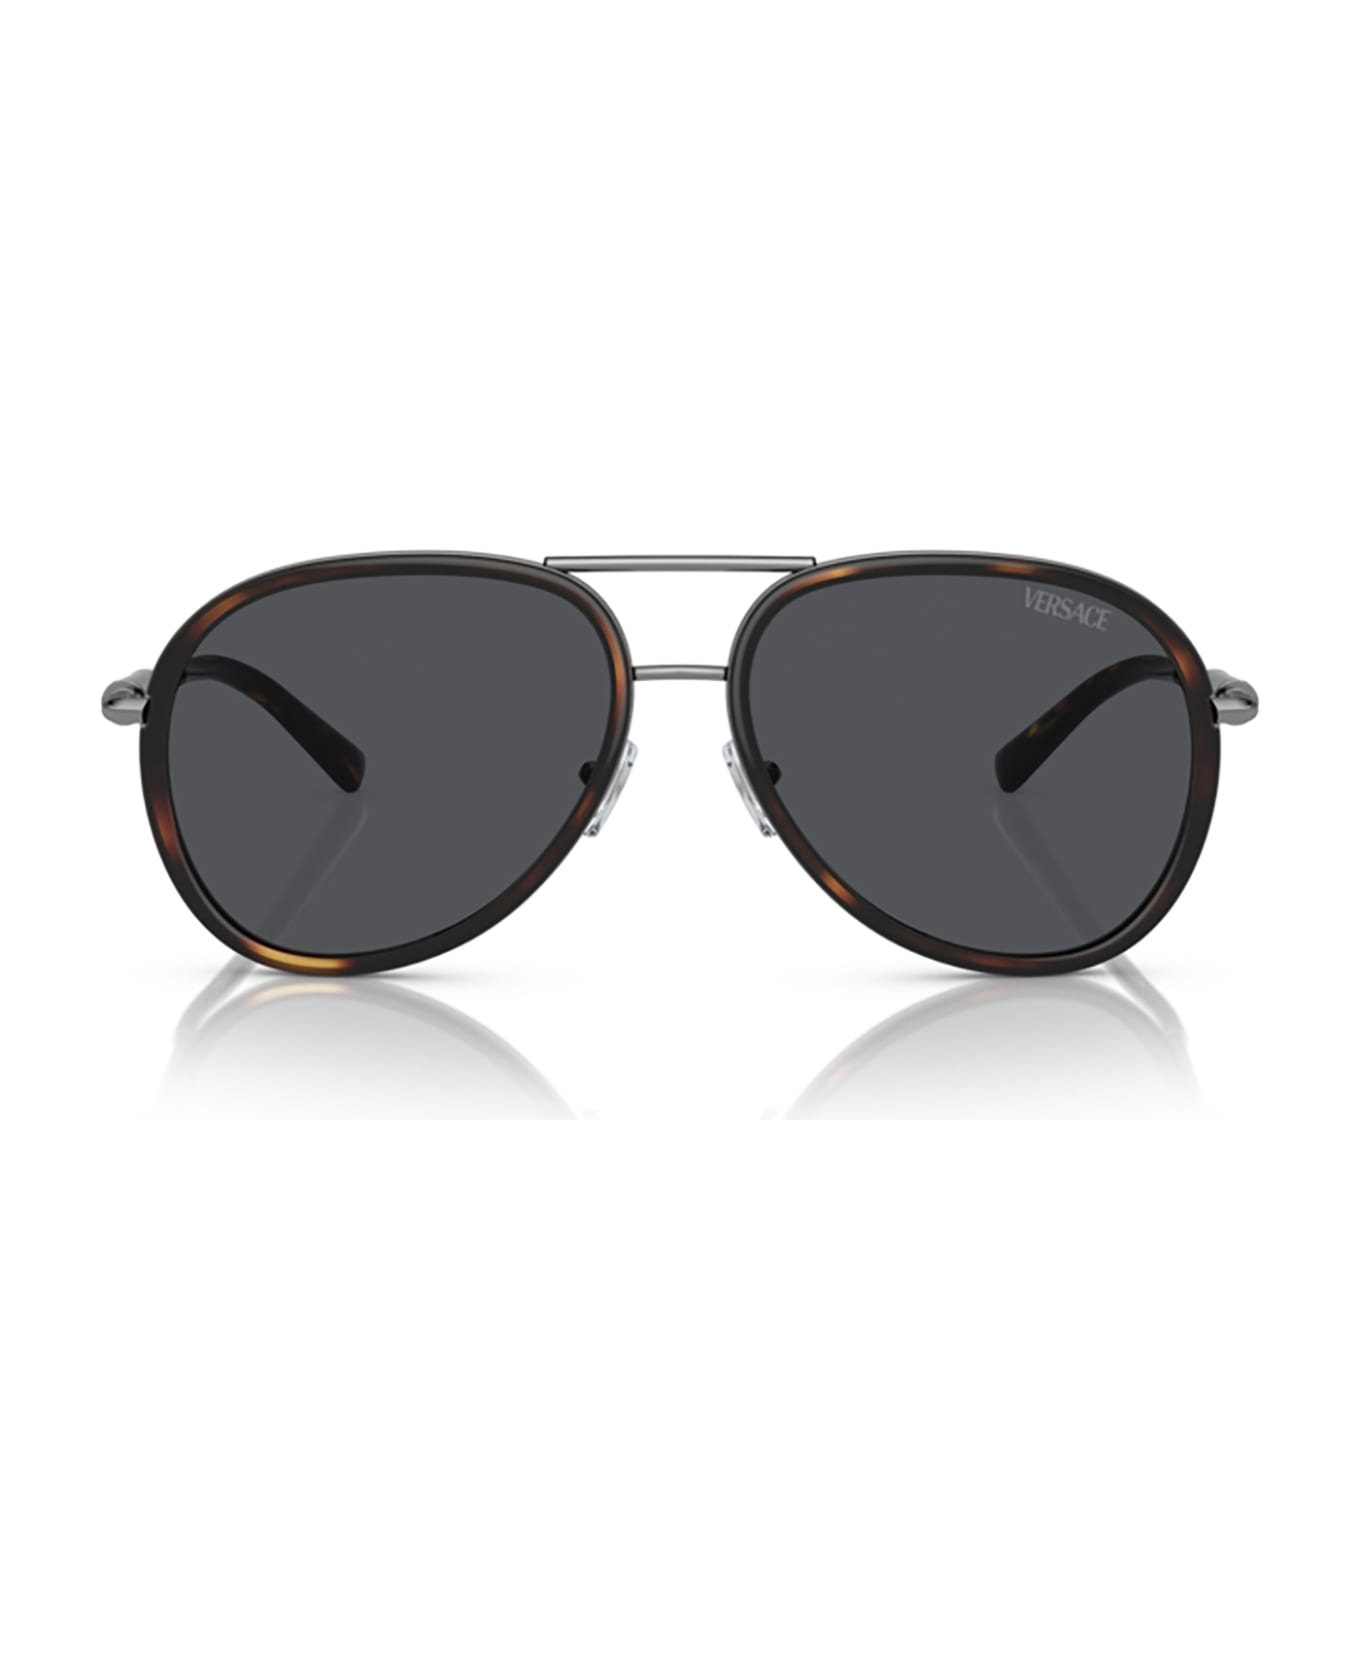 Versace Eyewear Ve2260 Havana Sunglasses - Havana